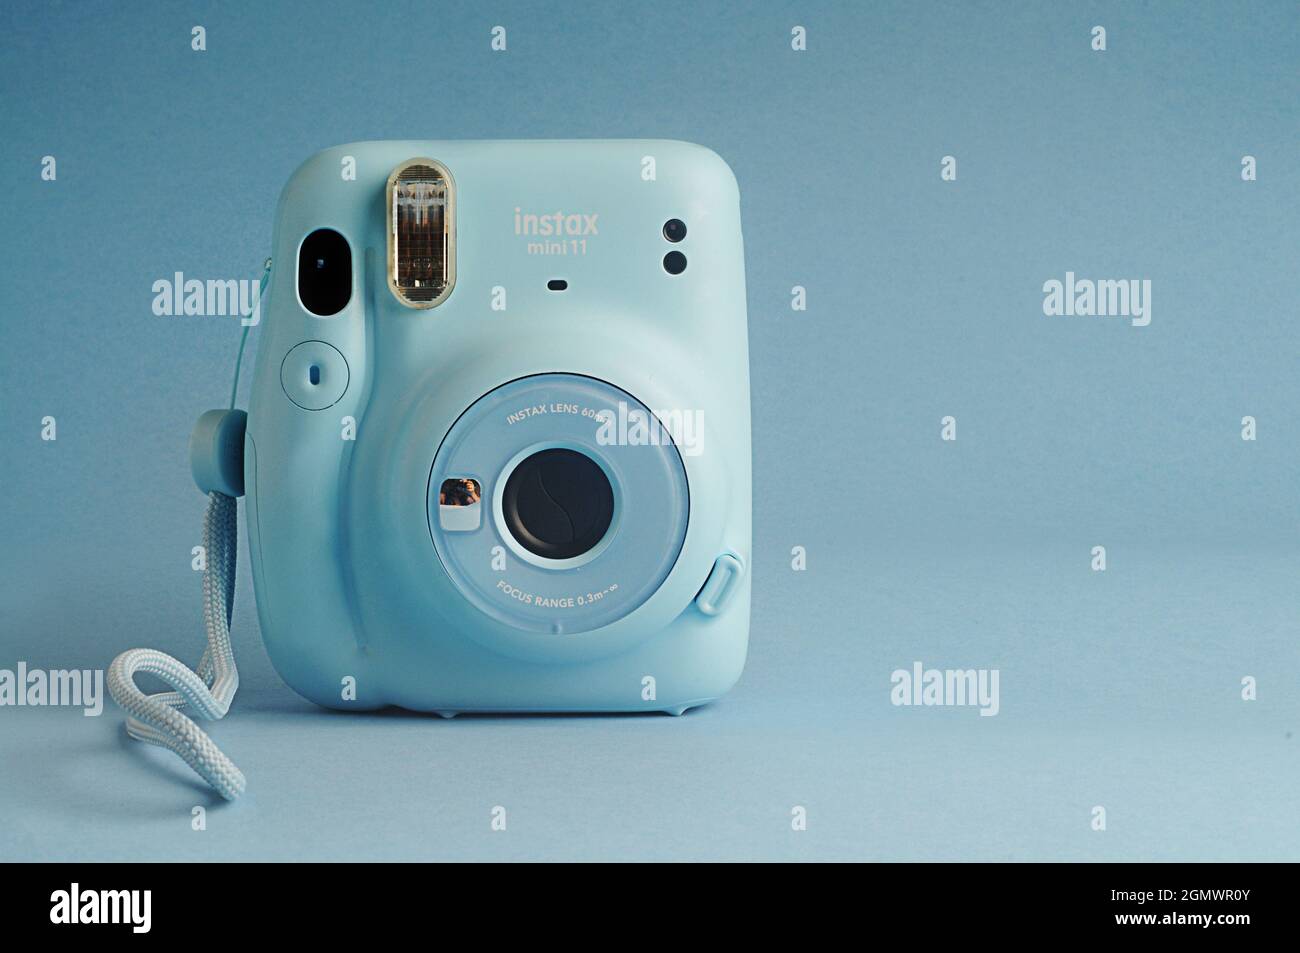 Fujifilm instax fotografías e imágenes de alta resolución - Alamy